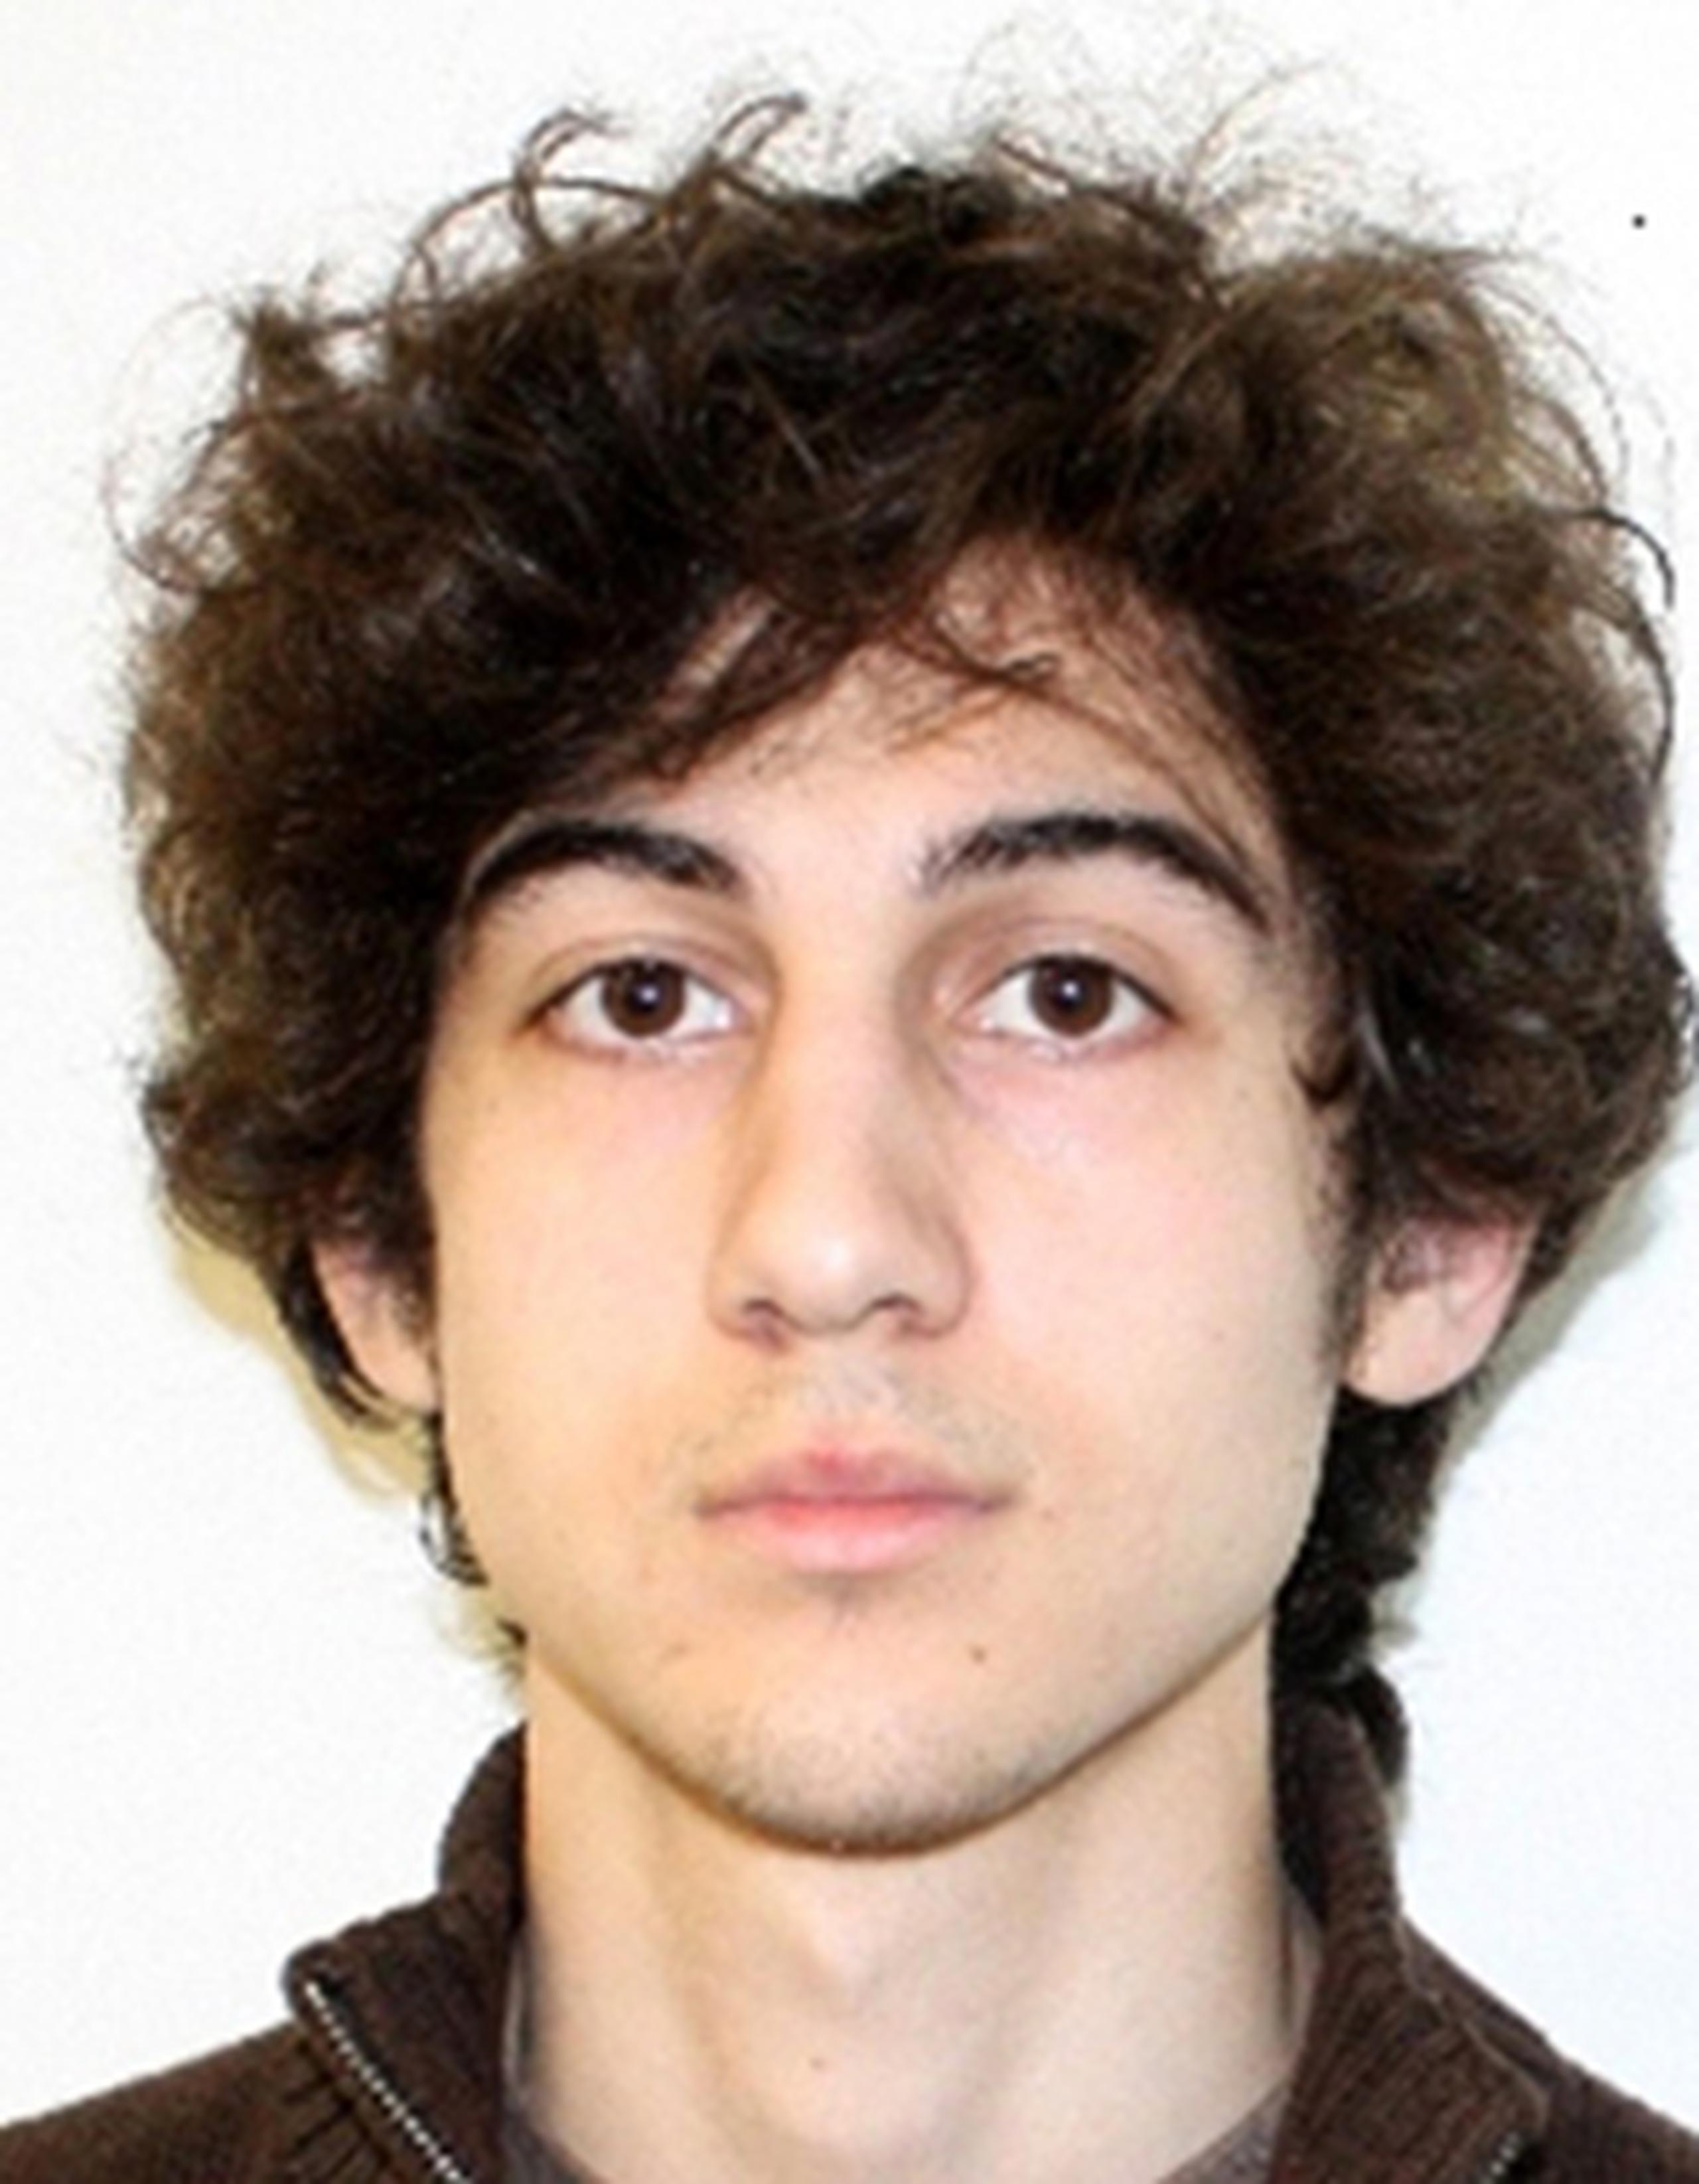 El juicio, que se prevé durará de tres a cuatro meses, decidirá en una primera etapa si Tsarnaev es inocente o culpable, y en este último caso si se lo condena a muerte o prisión perpetua. (AFP)